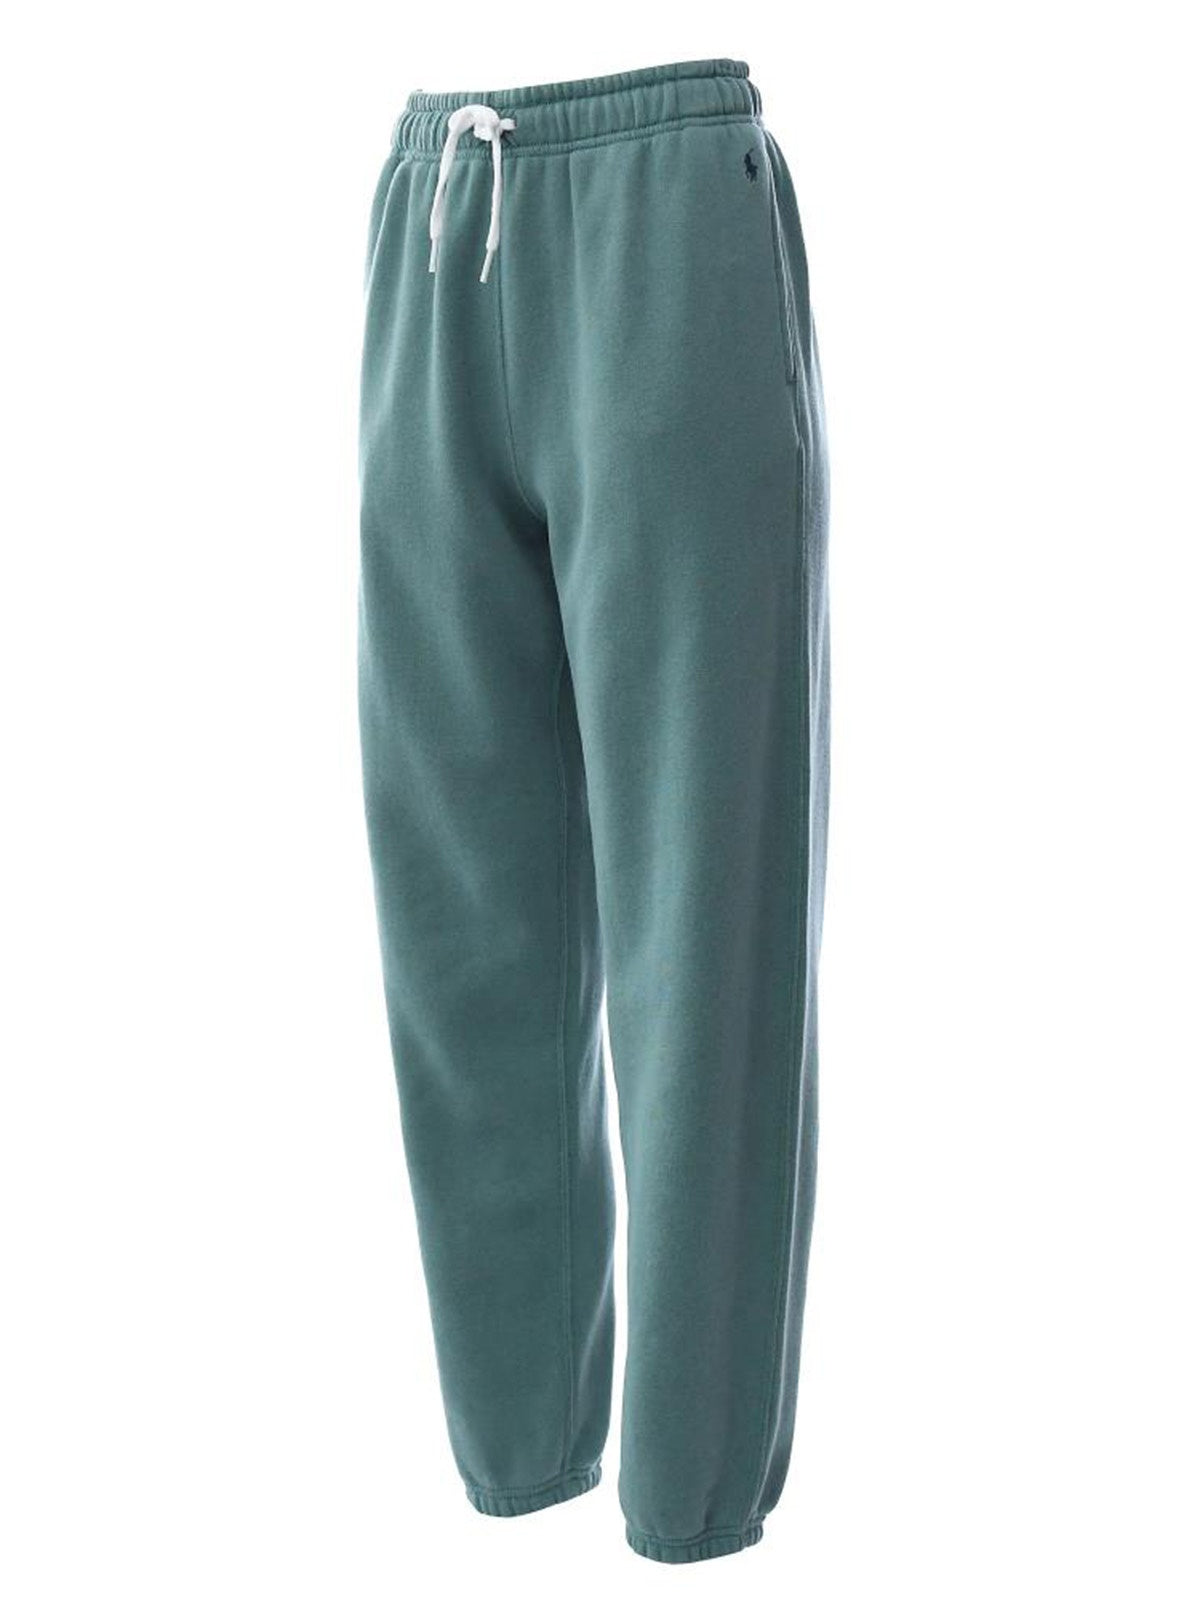 Pantaloni Donna Ralph Lauren - Prl Fleece Athletic Ankle Pant - Verde